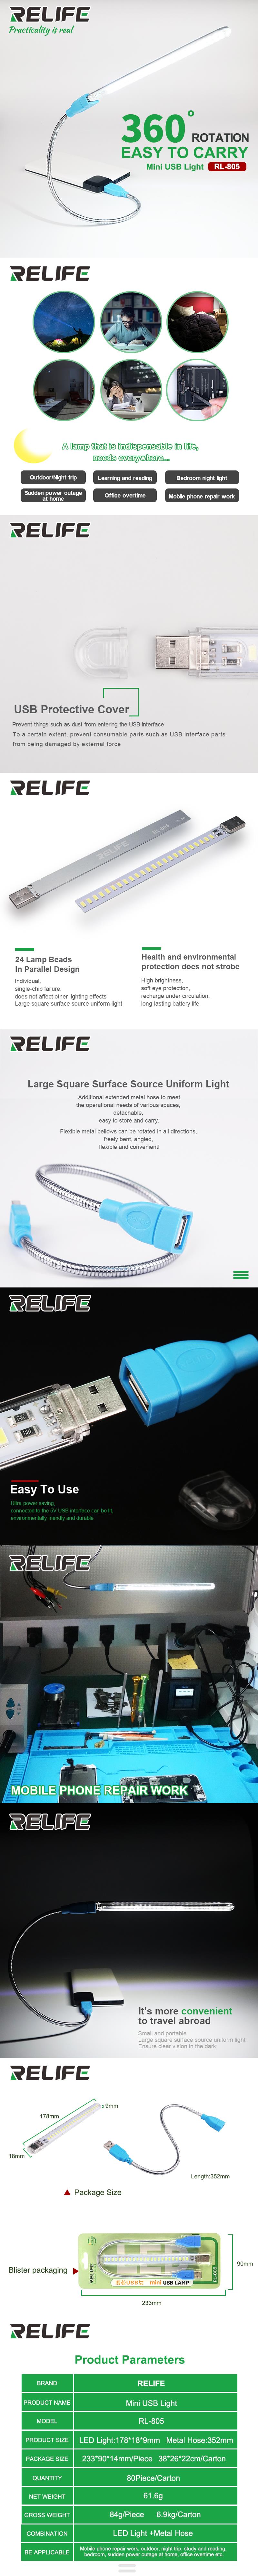 RELIFE RL-805 USB Mini LED Light